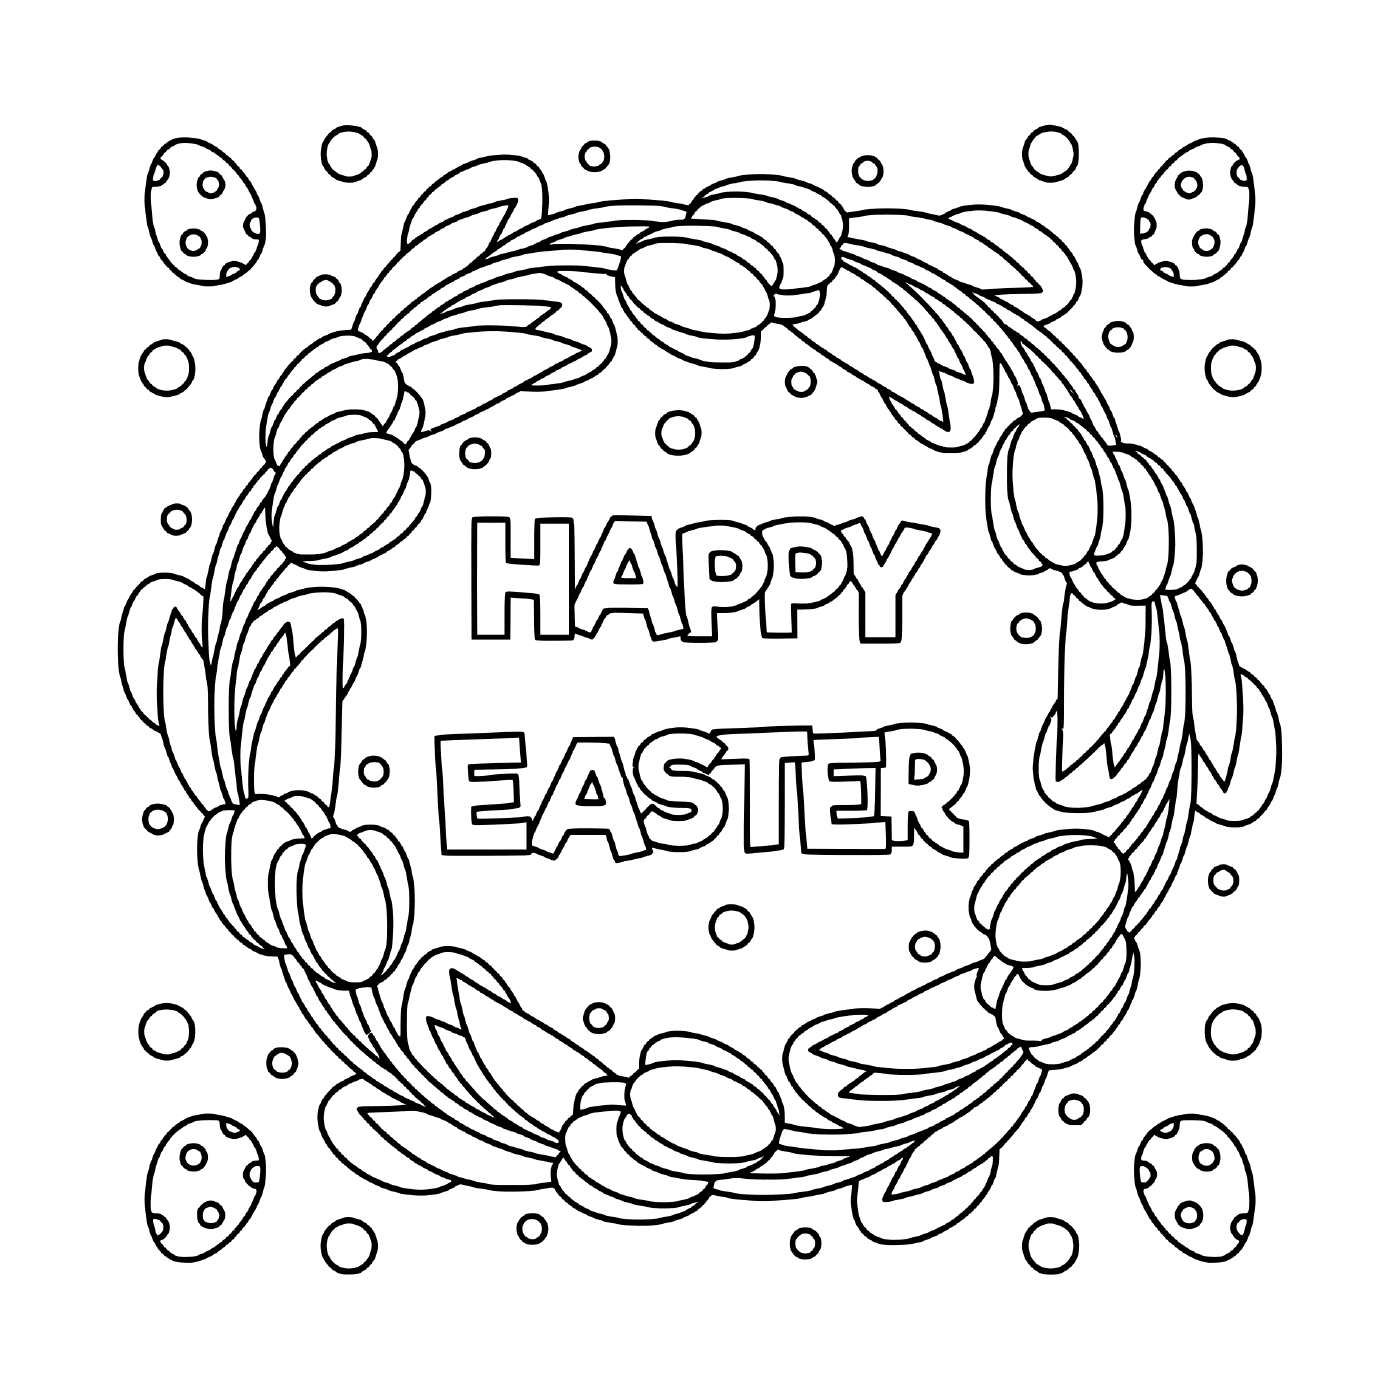  Feliz Páscoa ilustração em preto e branco 